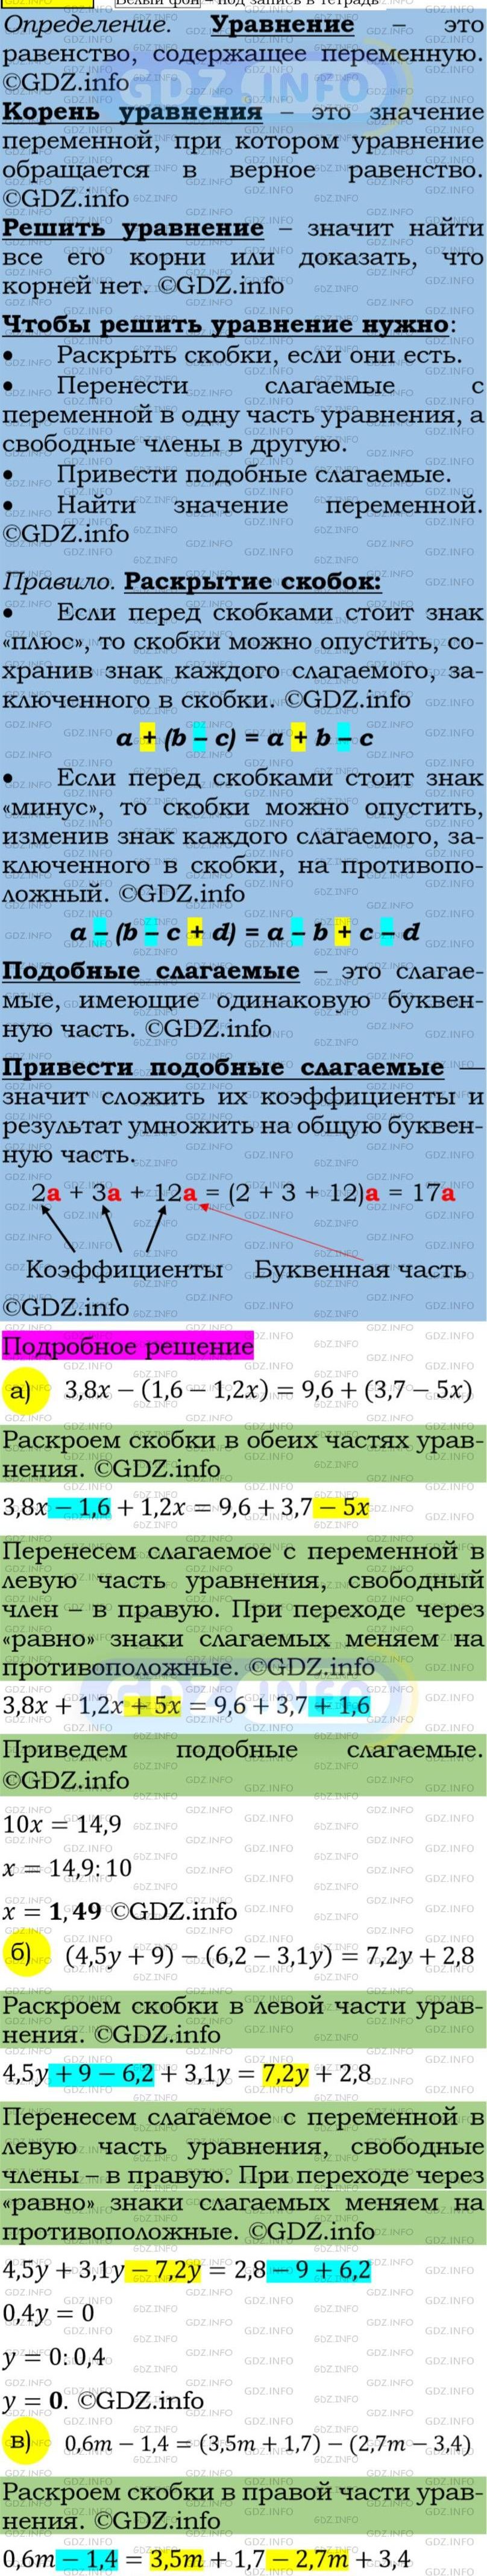 Фото подробного решения: Номер задания №235 из ГДЗ по Алгебре 7 класс: Макарычев Ю.Н.